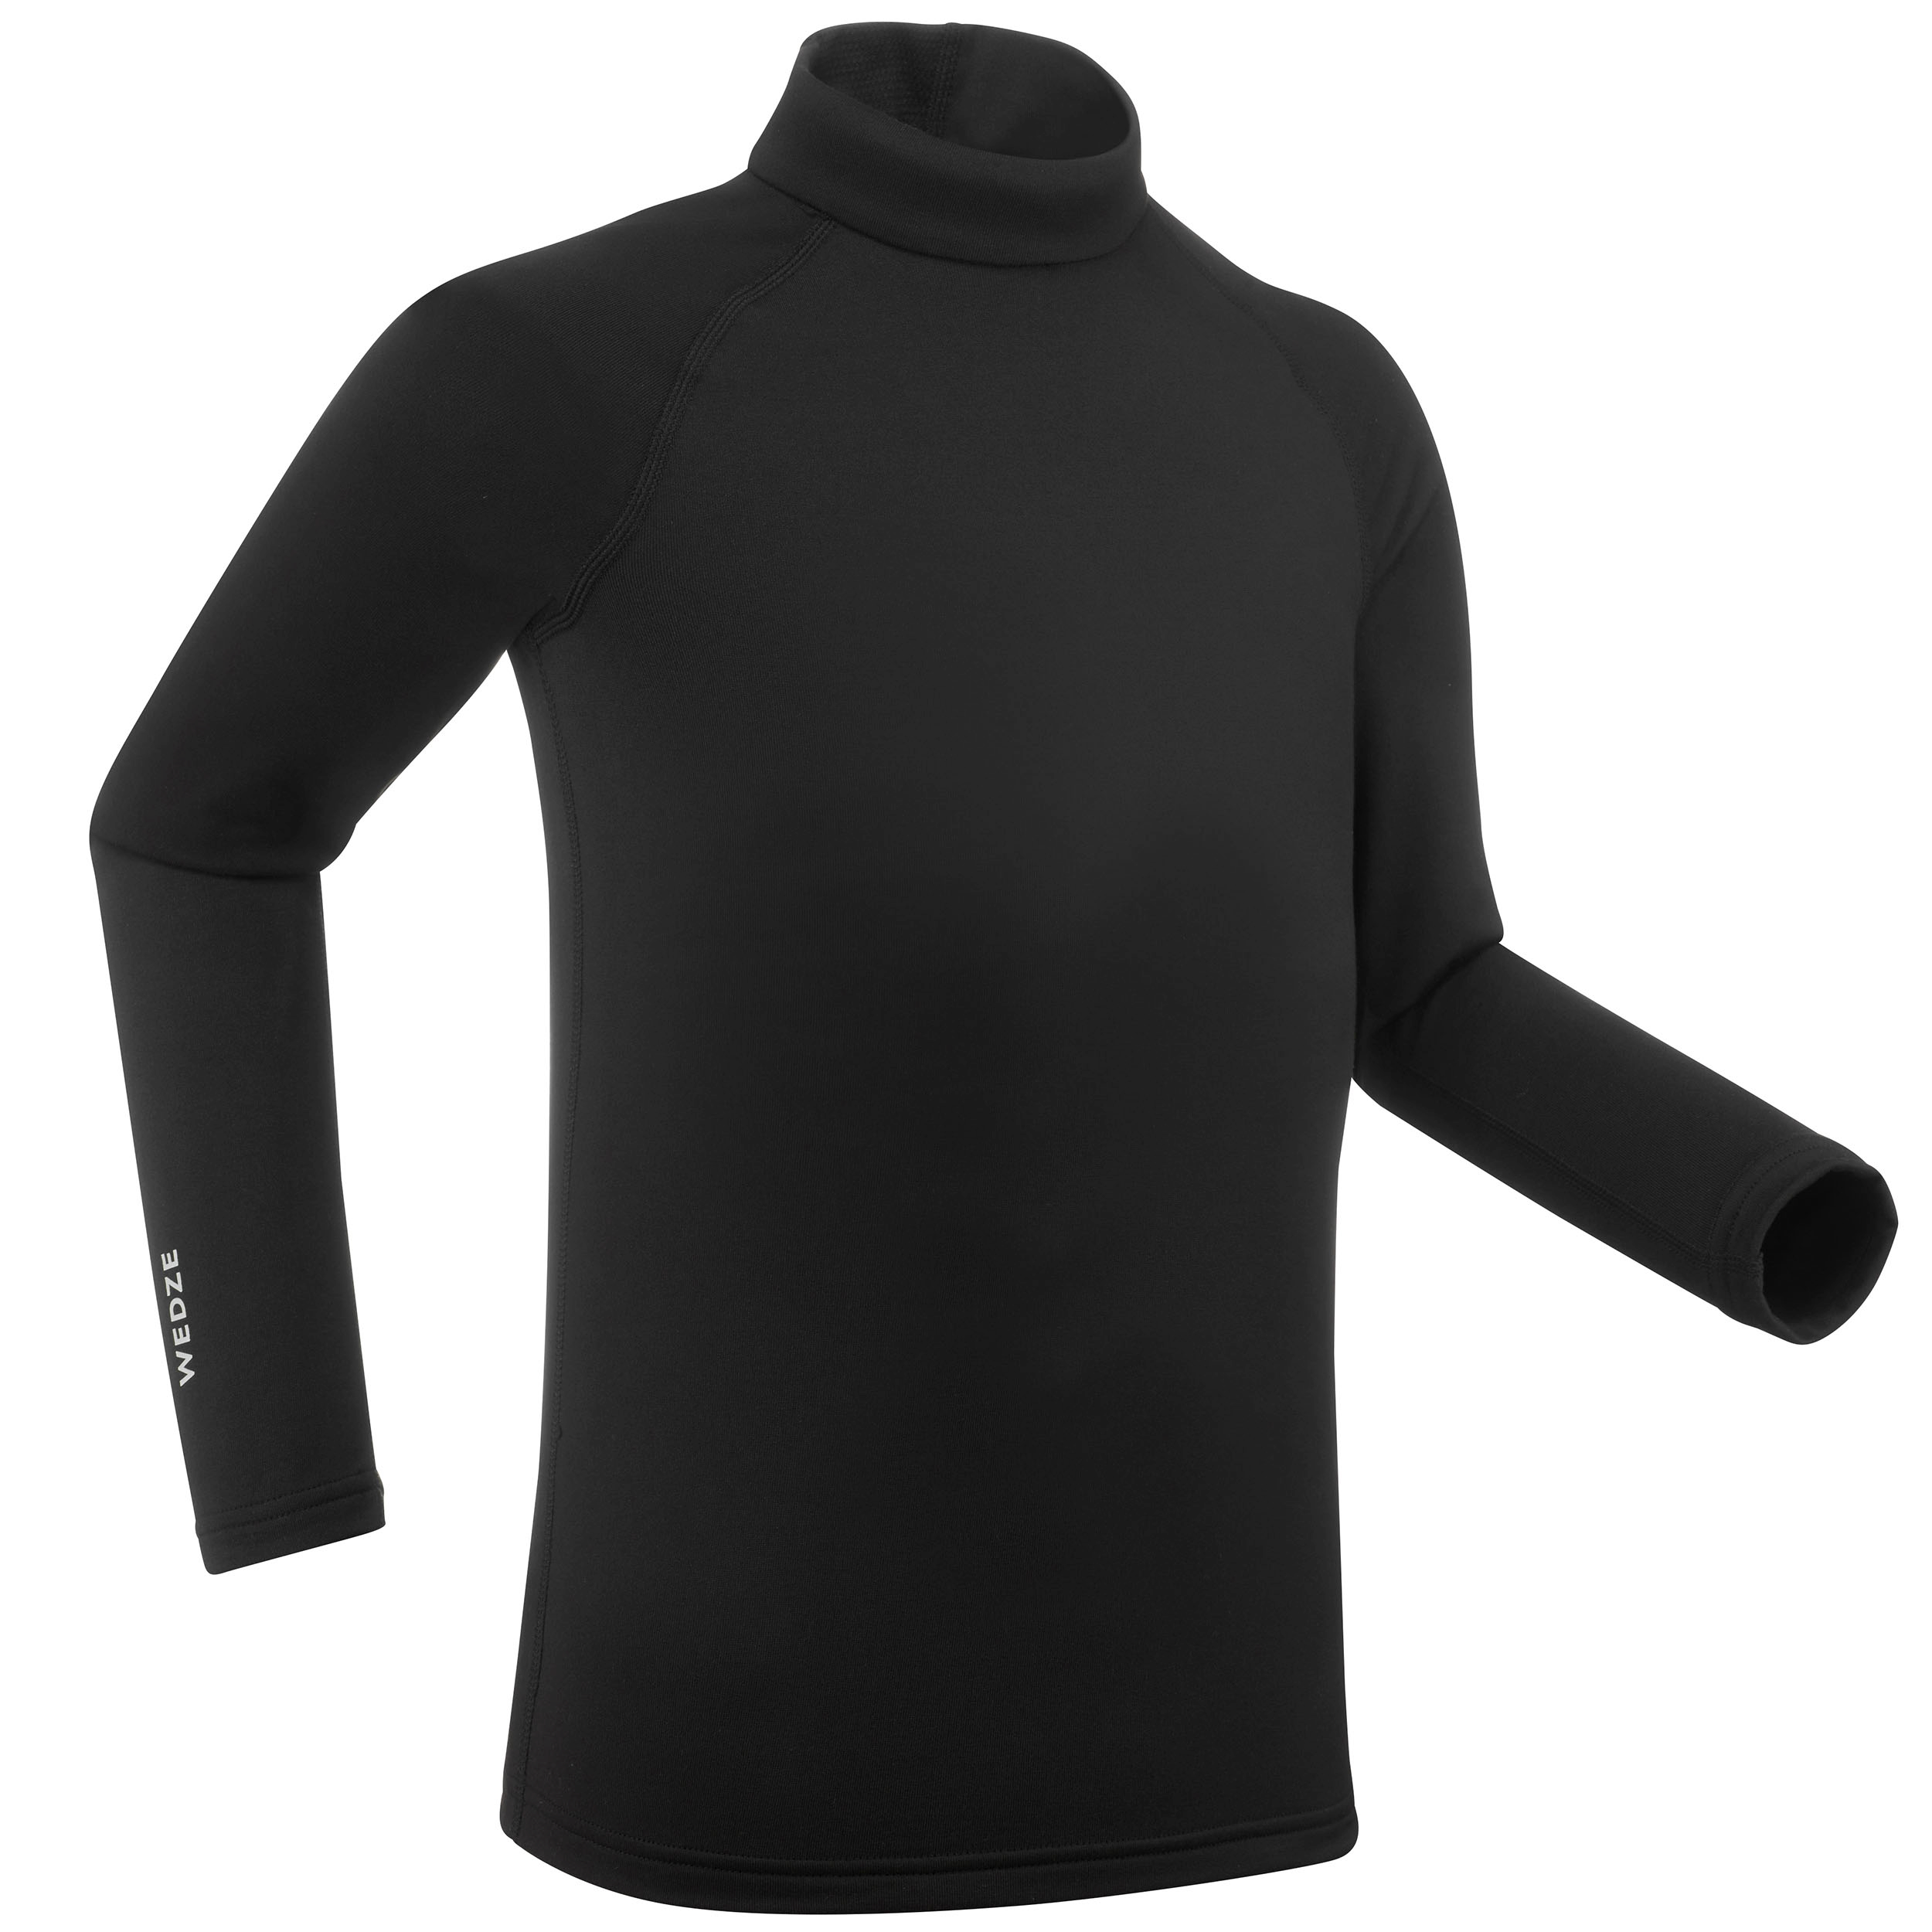 Sous-vêtement thermique de ski enfant - BL500 - haut noir pour les clubs et  collectivités